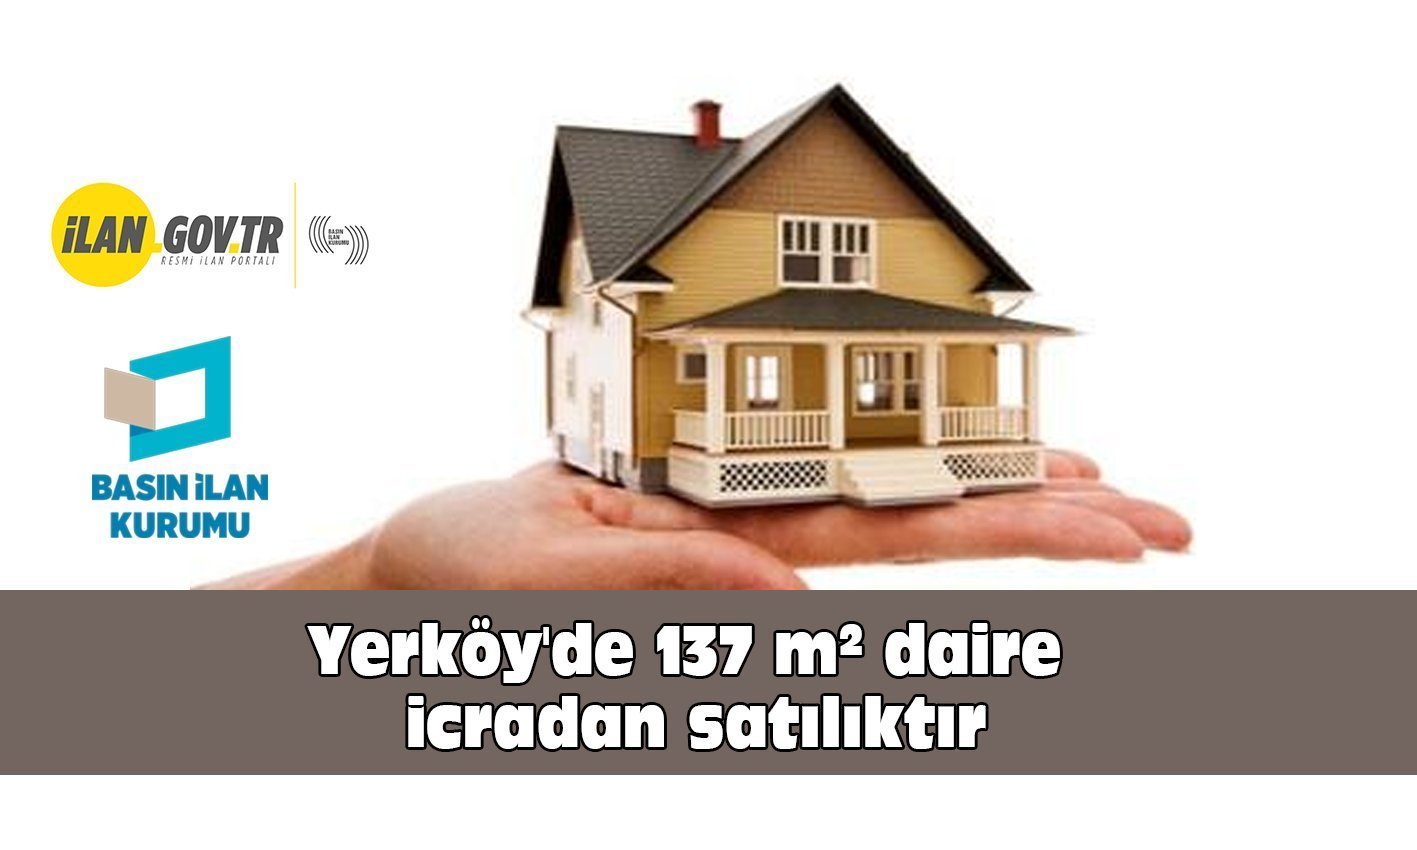 Yerköy’de 137 m² daire icradan satılıktır